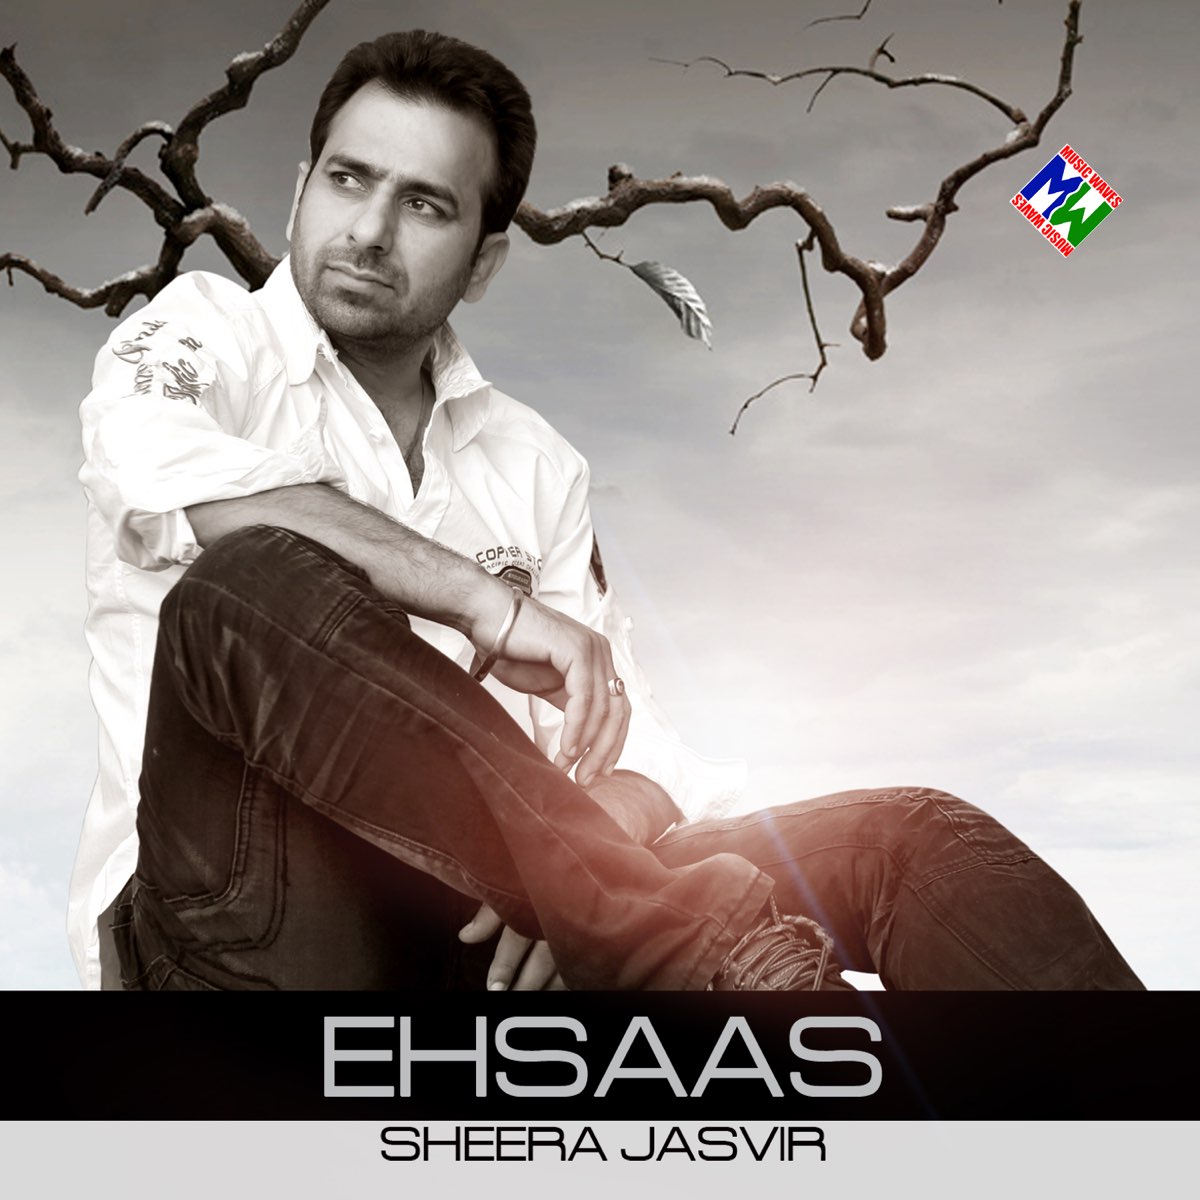 Ehsaas by Sheera Jasvir on Apple Music